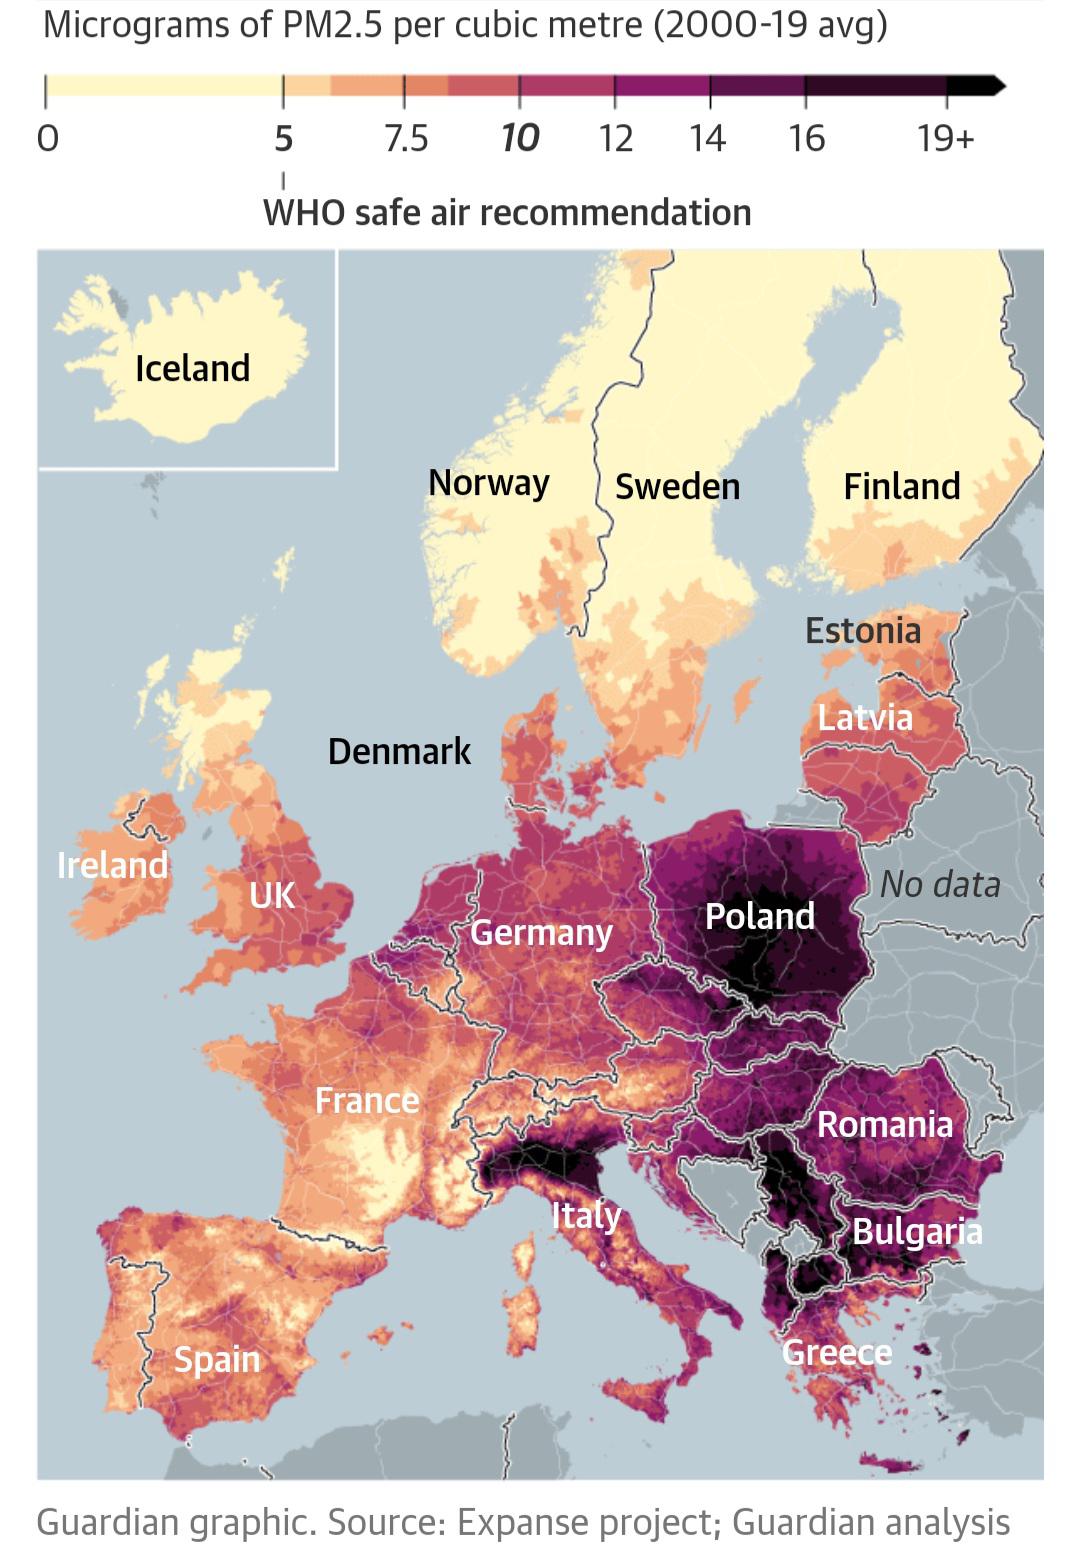 Zanieczyszczenie powietrza według krajów w Europie (PM2,5), 2000-2019